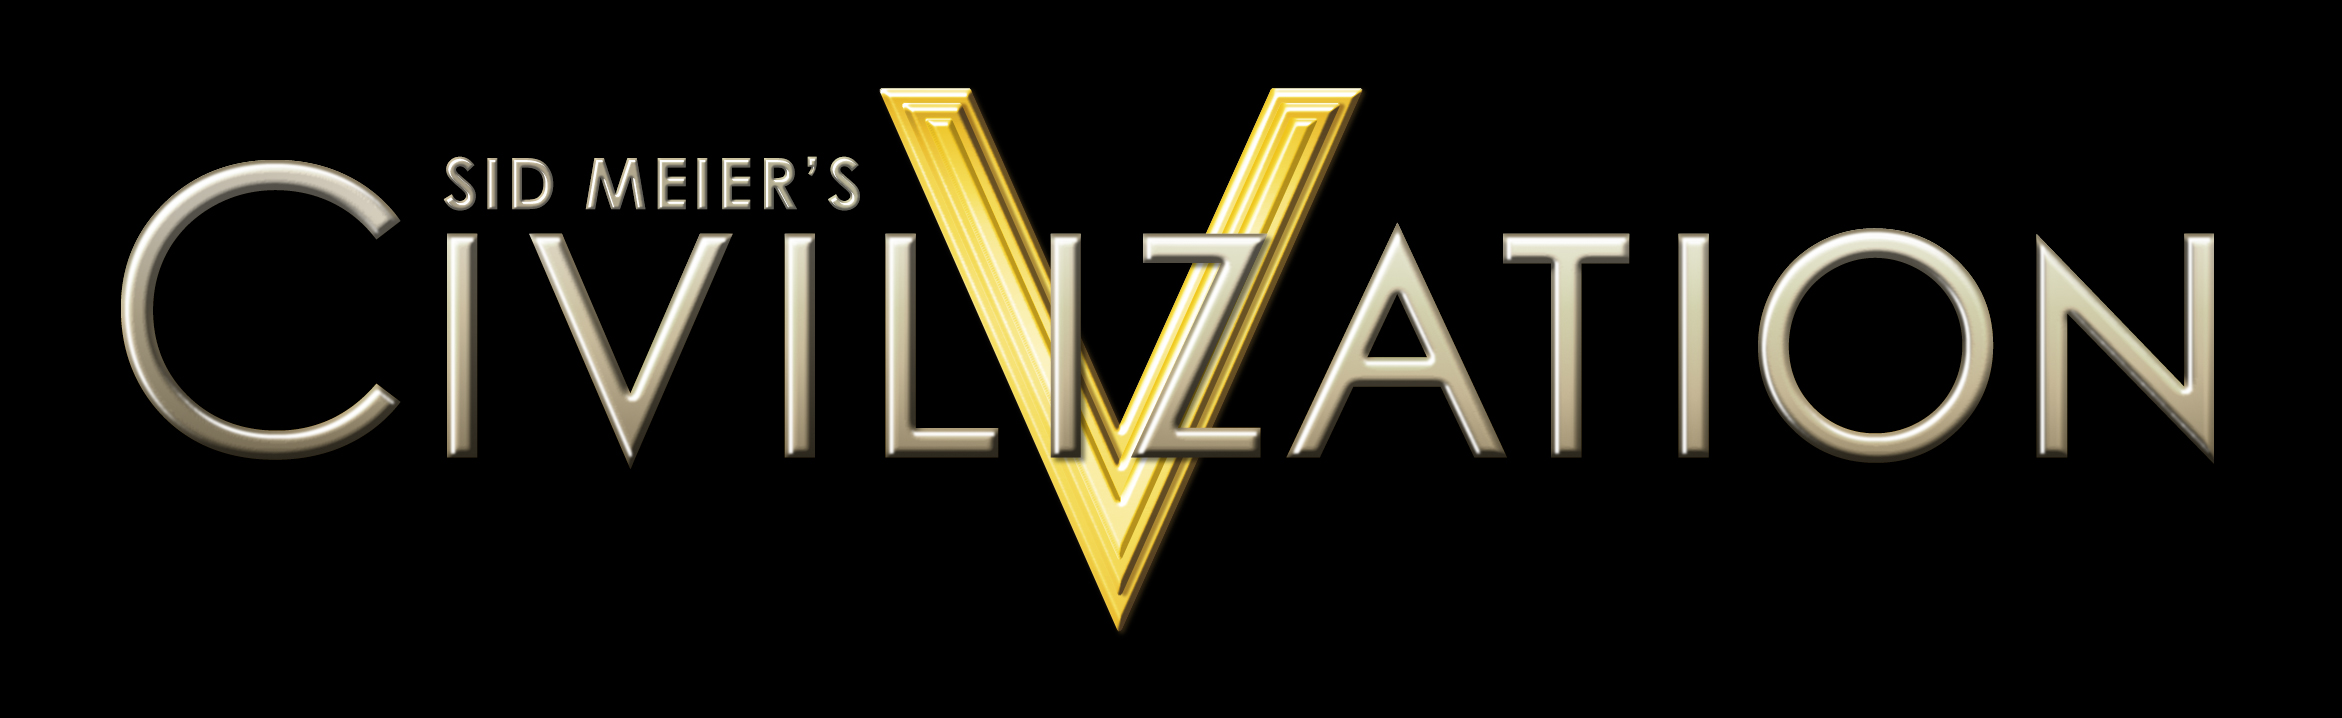 civilization-v-logo-on-black